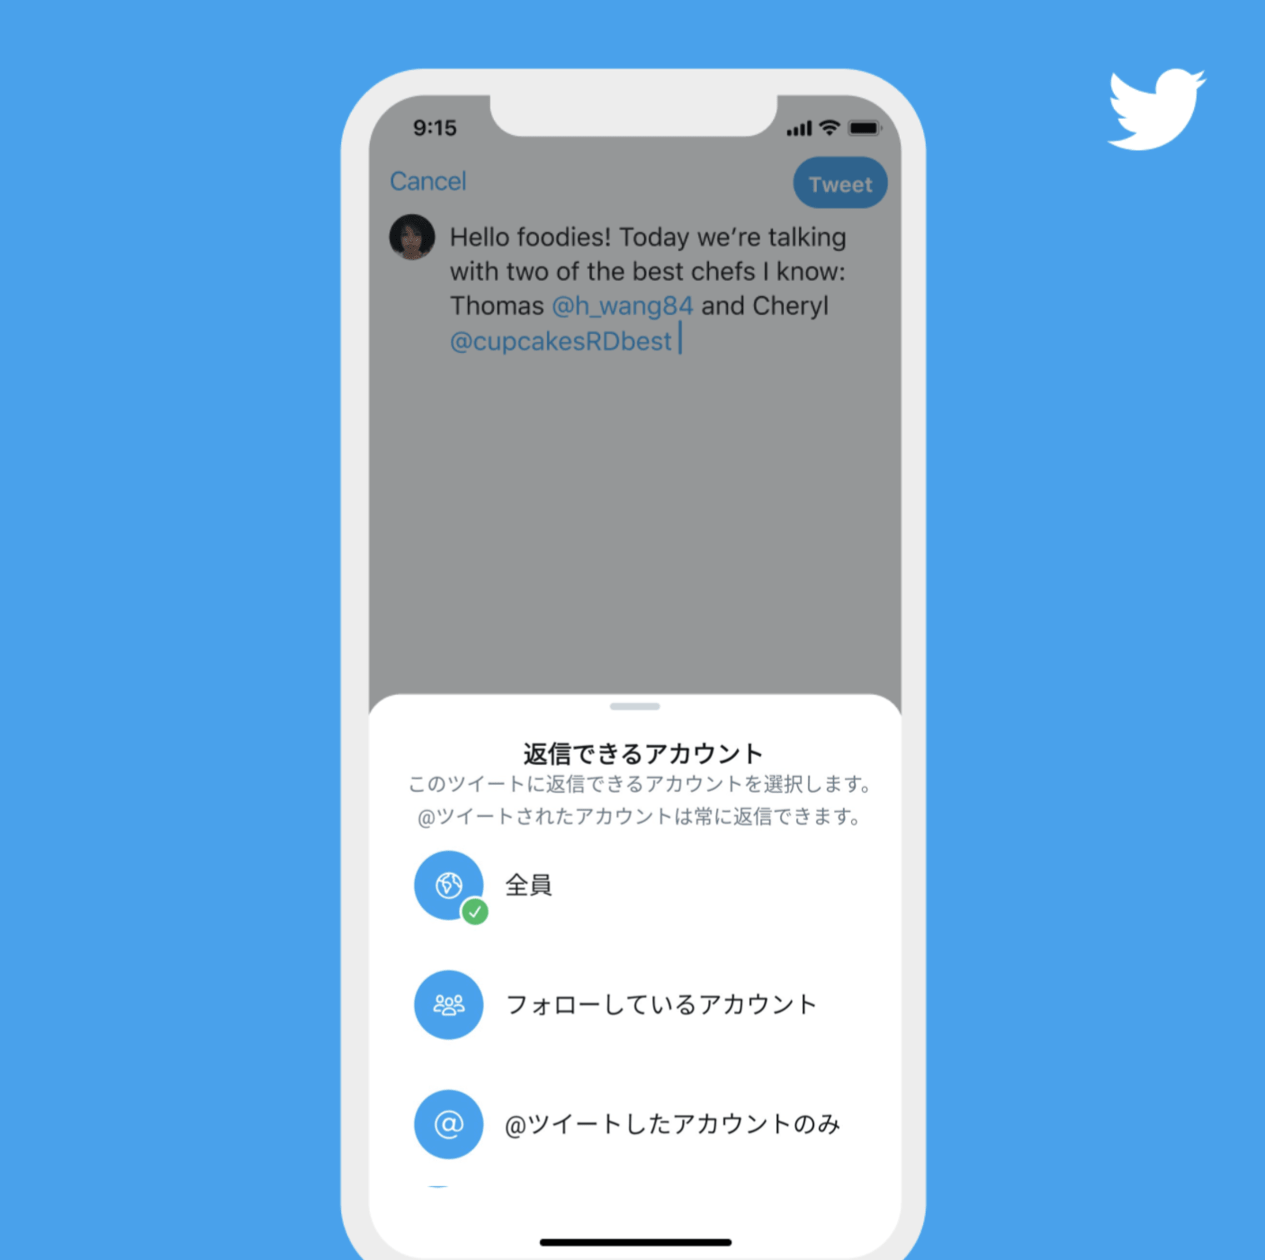 Twitterが自分のツイートに返信できるアカウントを制限できる機能のテスト開始 Web担当者forum